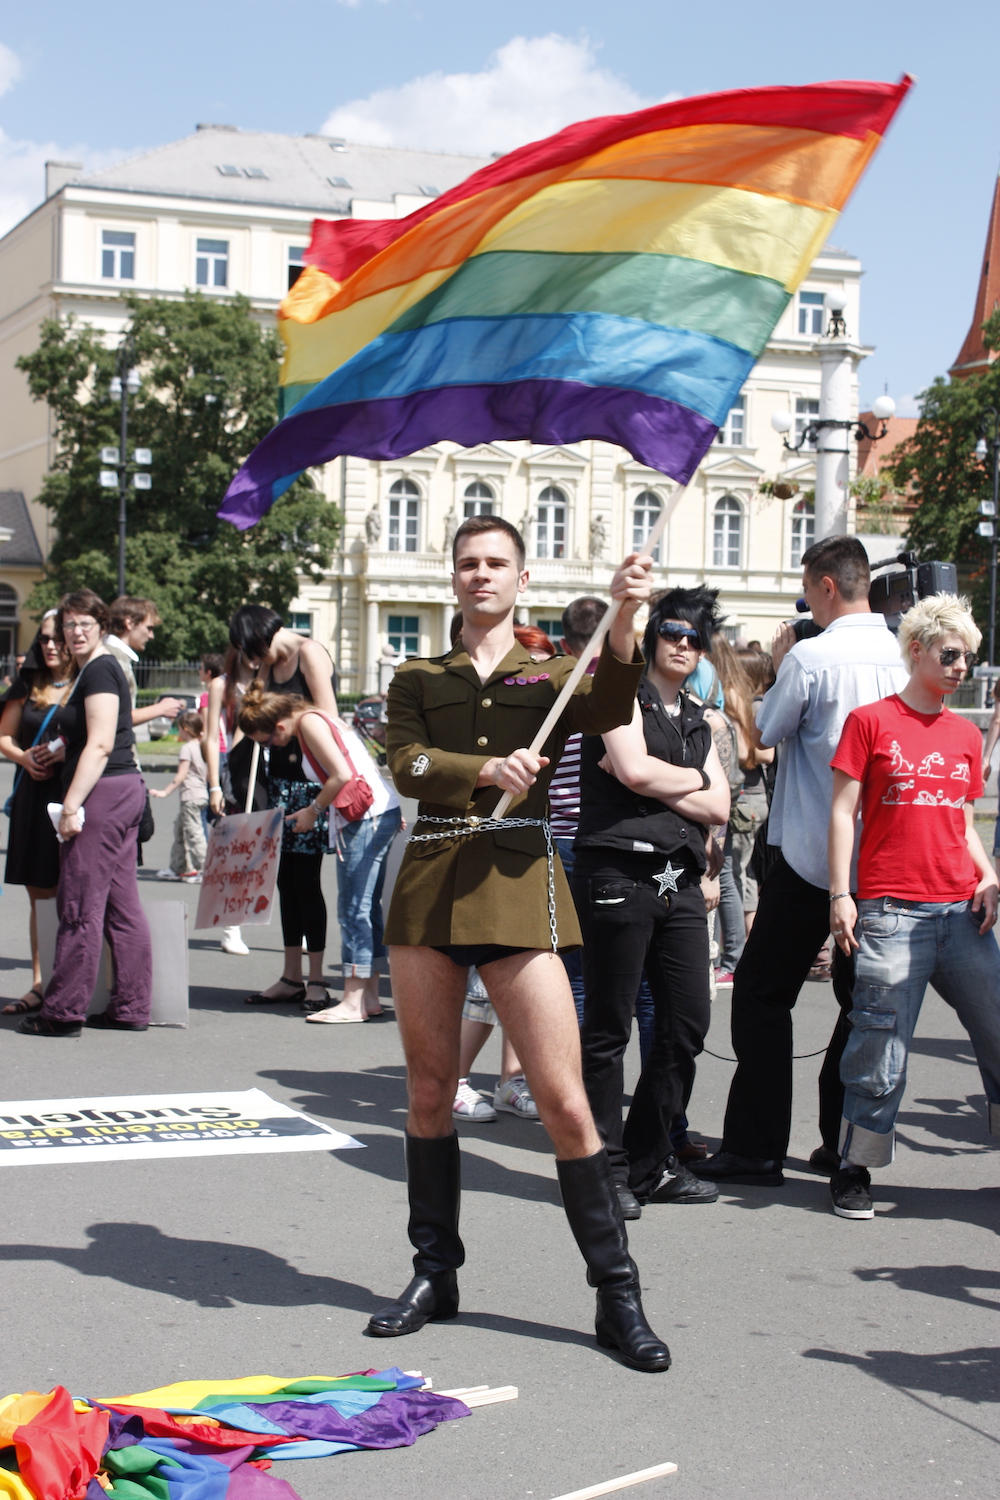 Zagreb Pride, 2009. Image: Andrea Knezovic